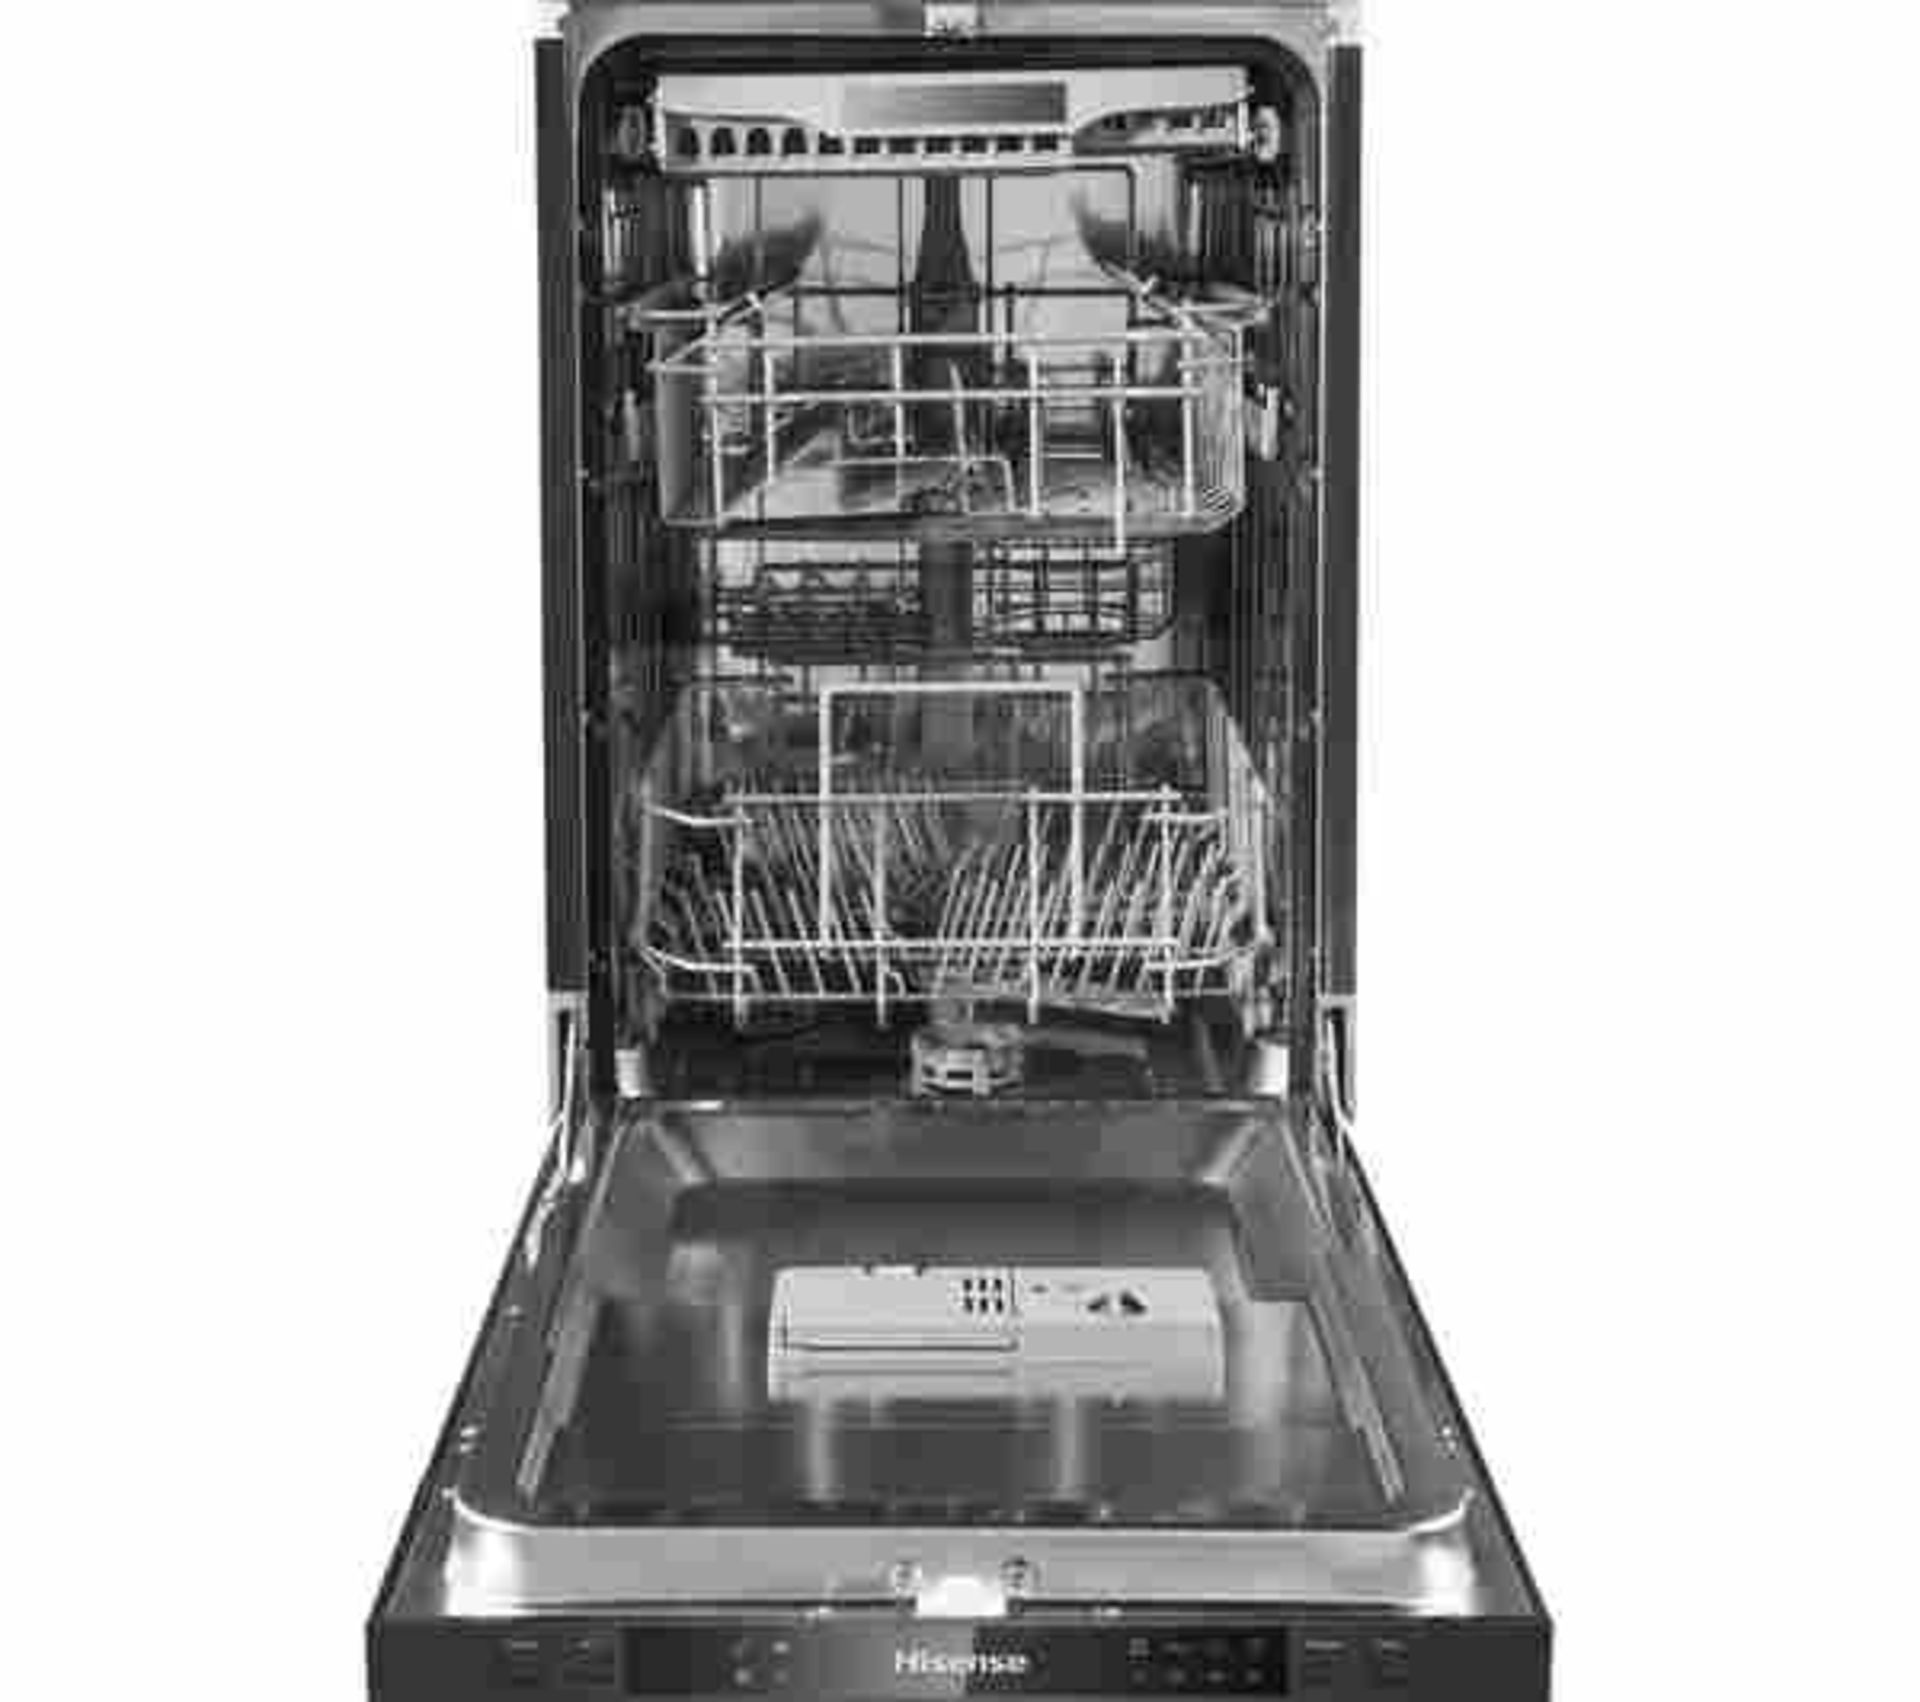 + VAT Grade B ISP £299 - Hisense HV520E40UK Fully Intergrated Slimline Dishwasher - 11 Place - Image 2 of 3